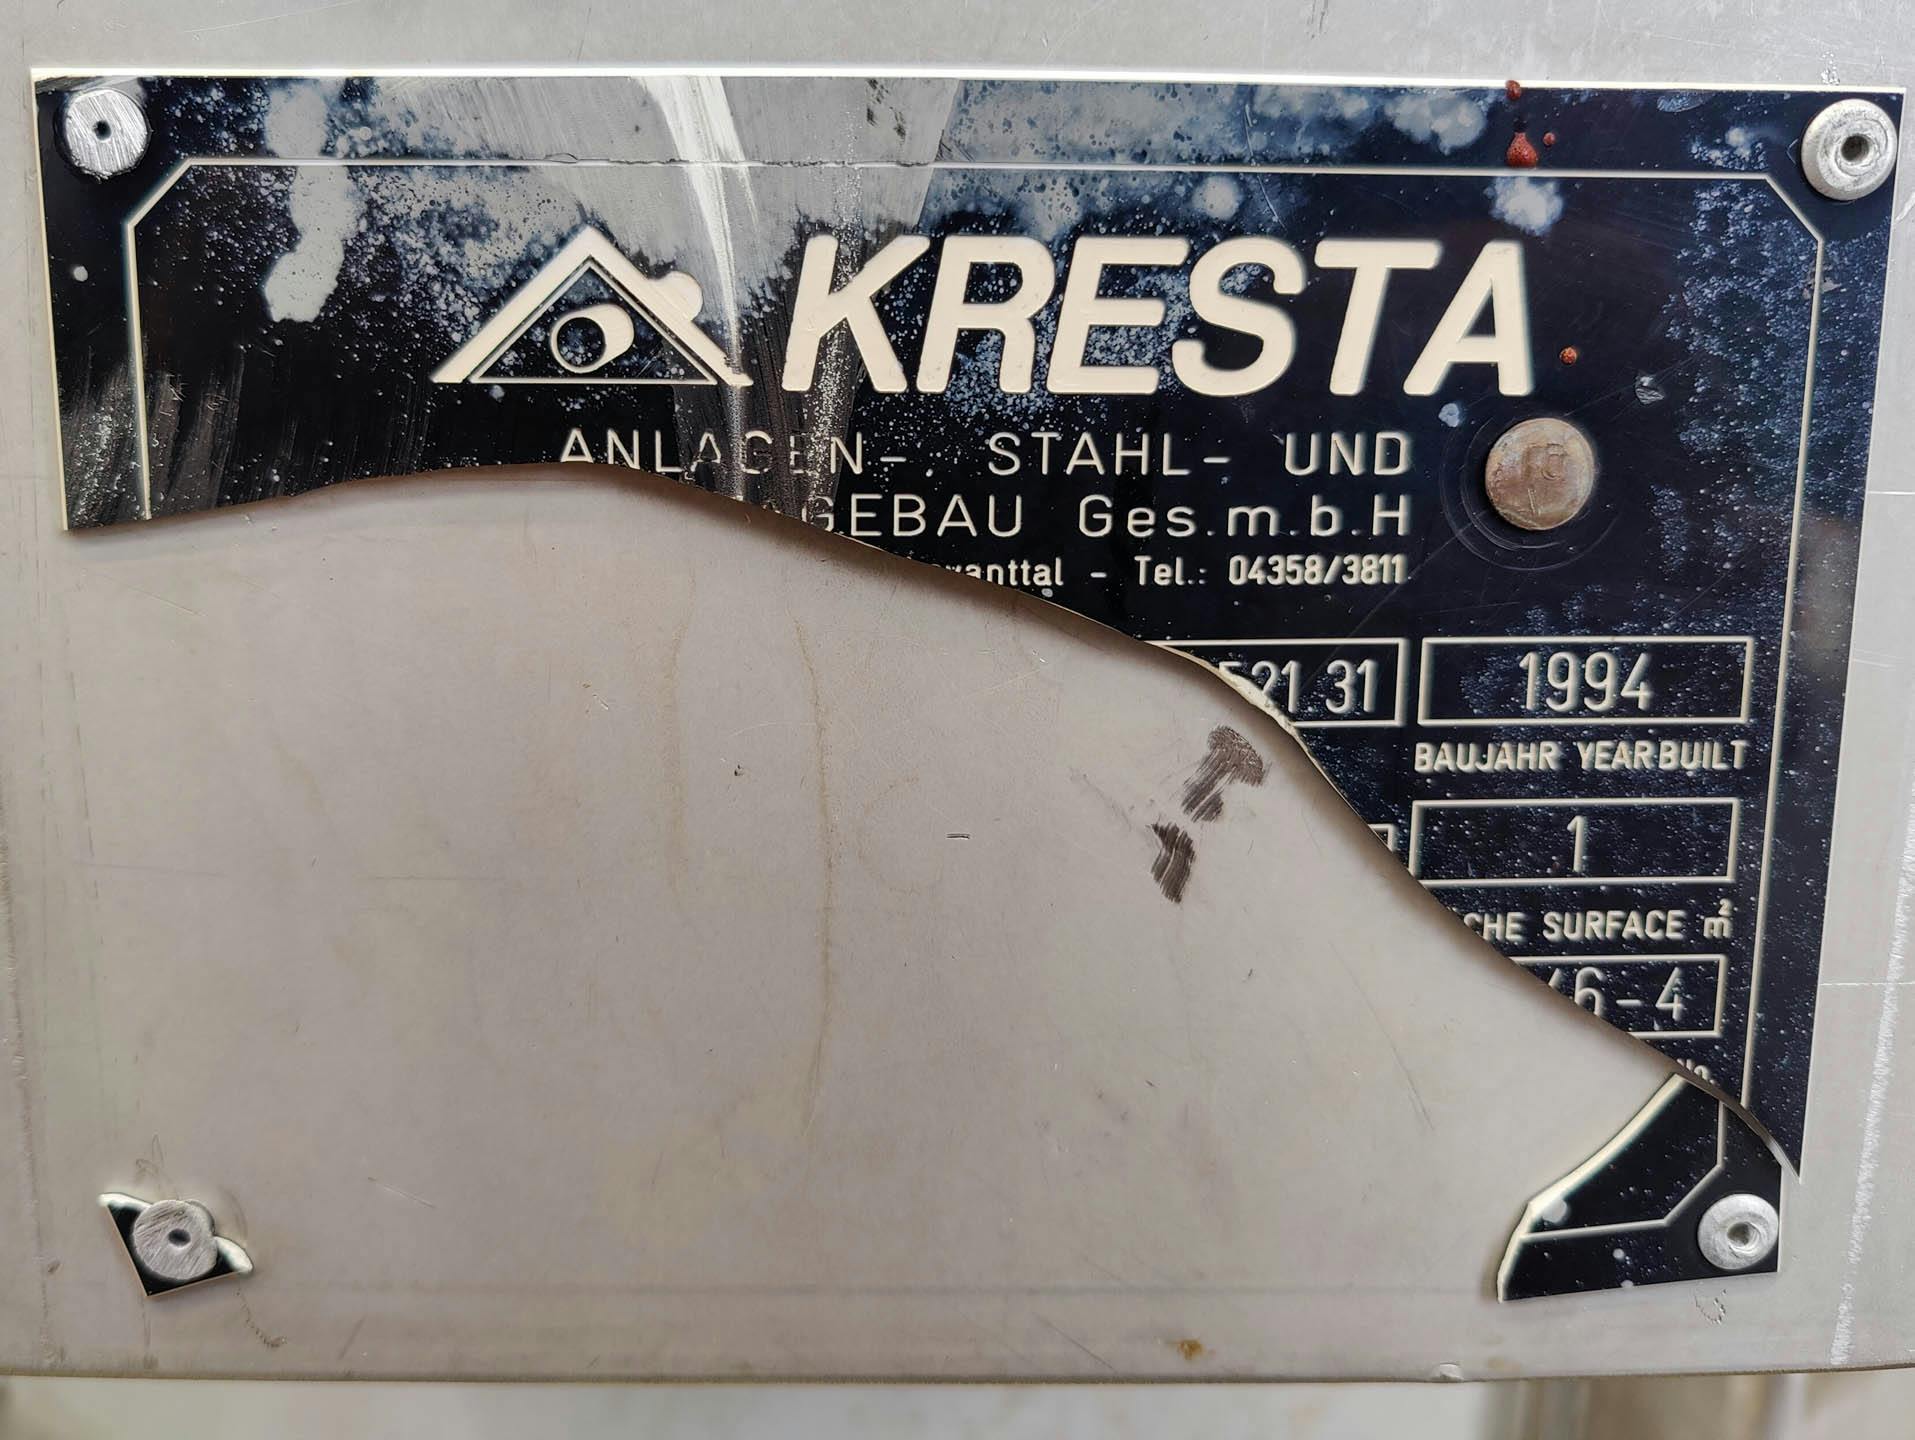 Kresta 250 Ltr. - Pressure vessel - image 7